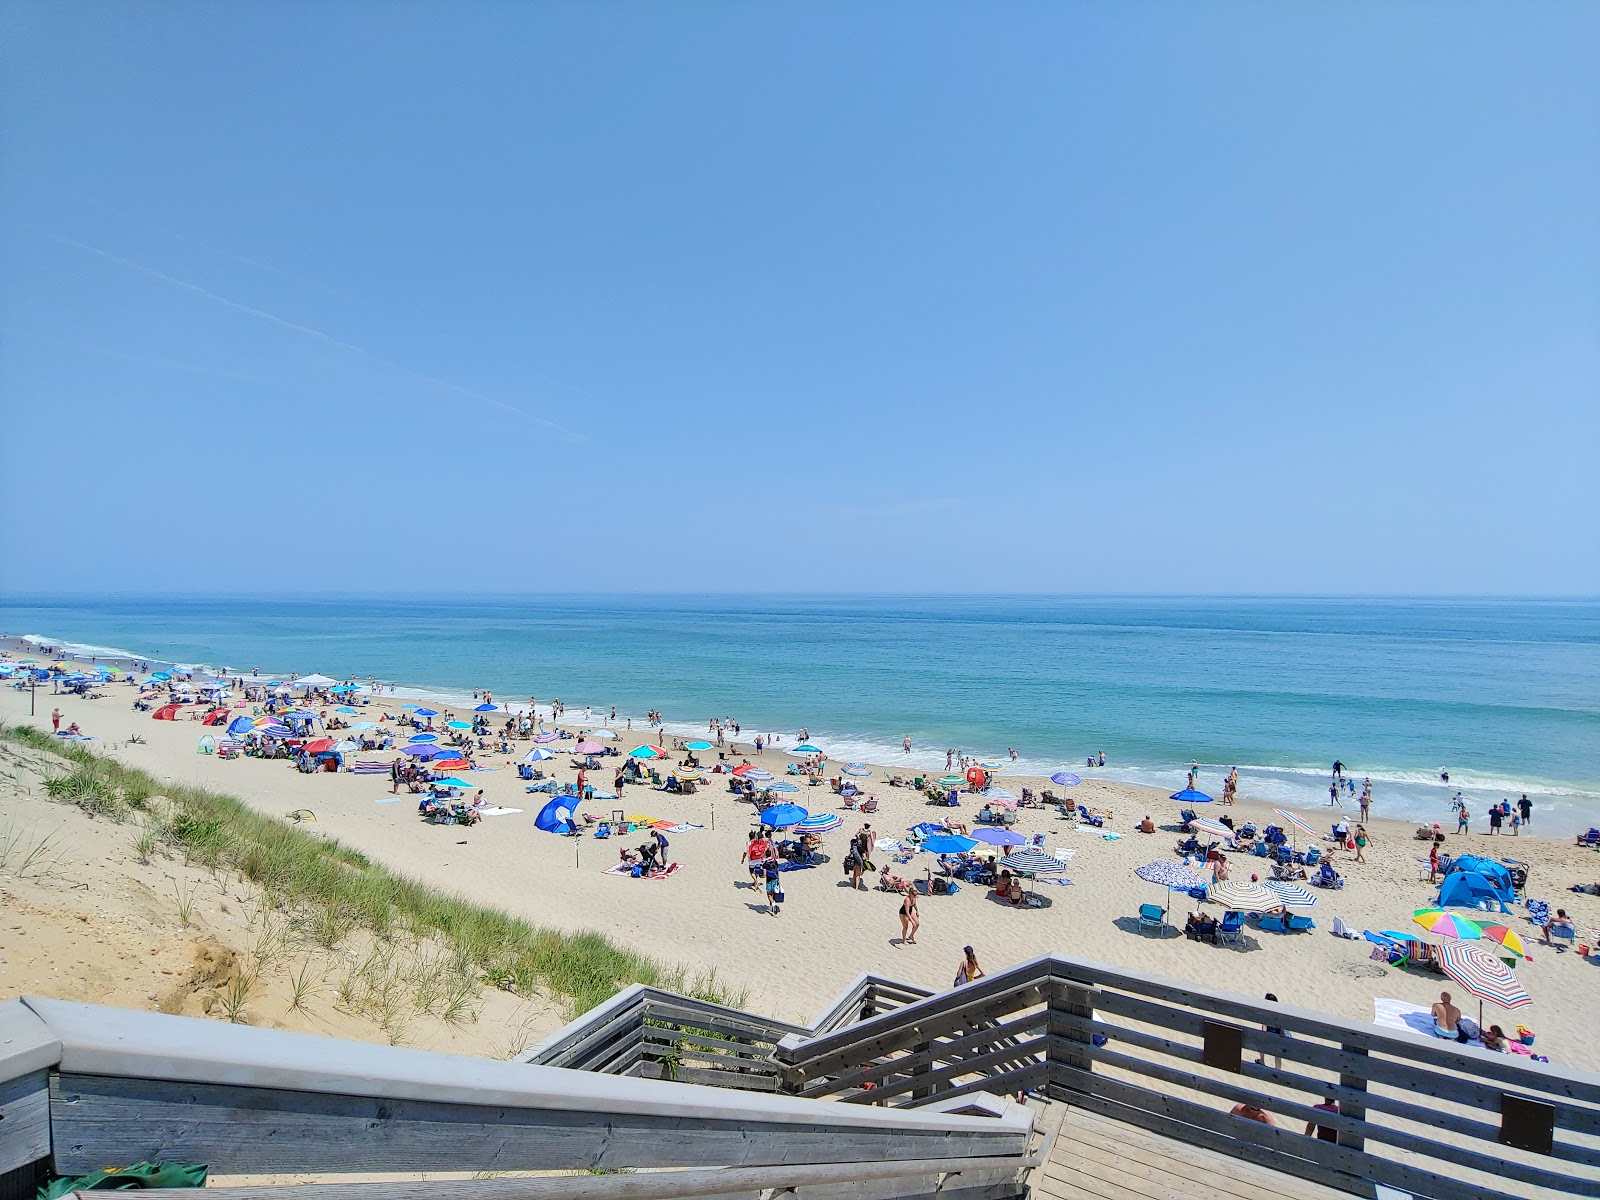 Marconi beach'in fotoğrafı geniş plaj ile birlikte